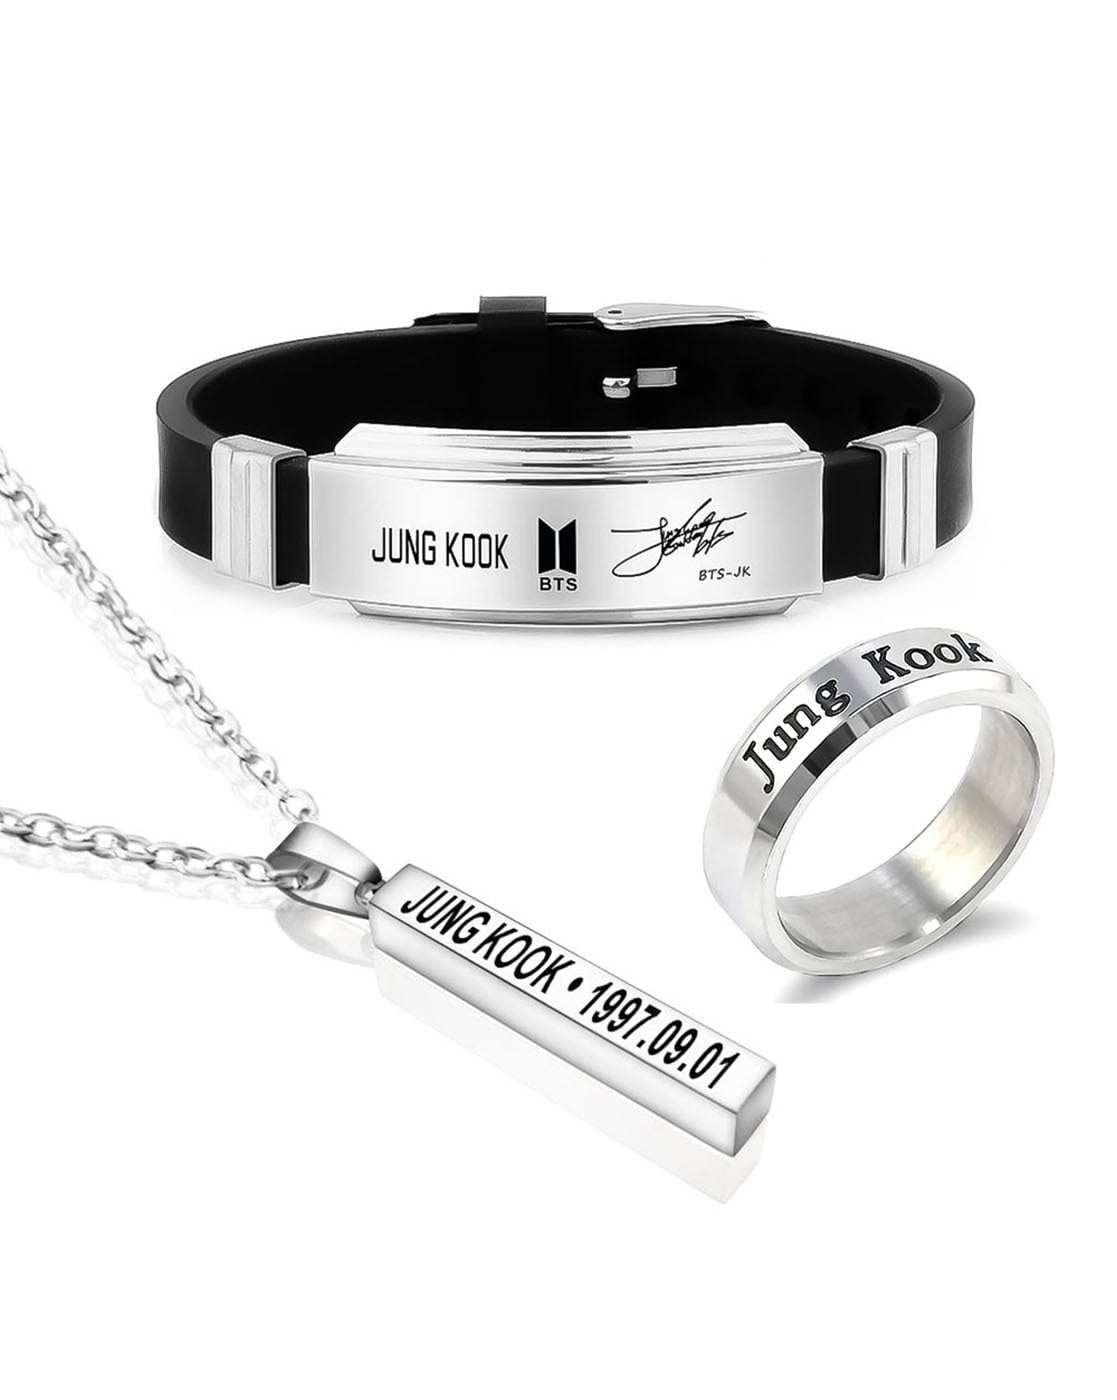 BTS Jungkook/jk Inspired Beaded Bracelet - Etsy Canada | Bts bracelet,  Beaded bracelets, Beaded